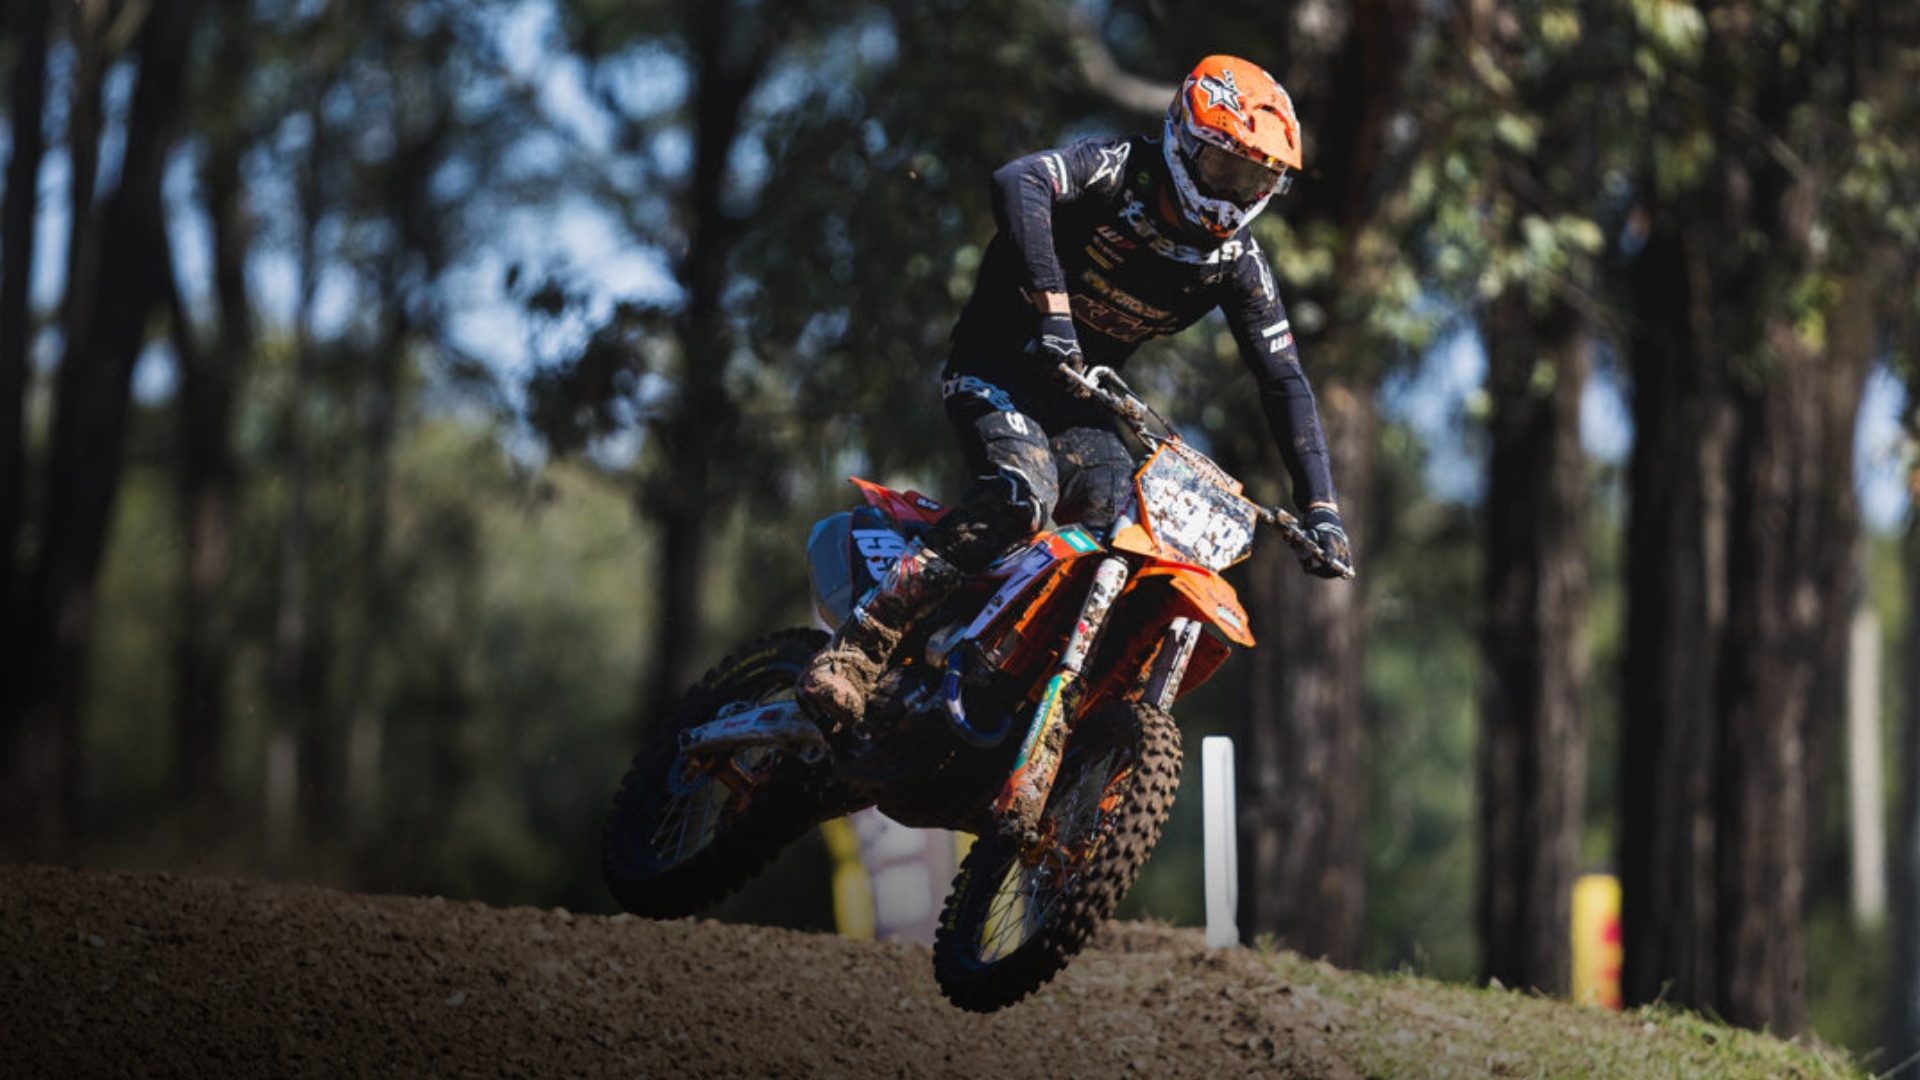 Watch Australian Motocross on Stan Sport